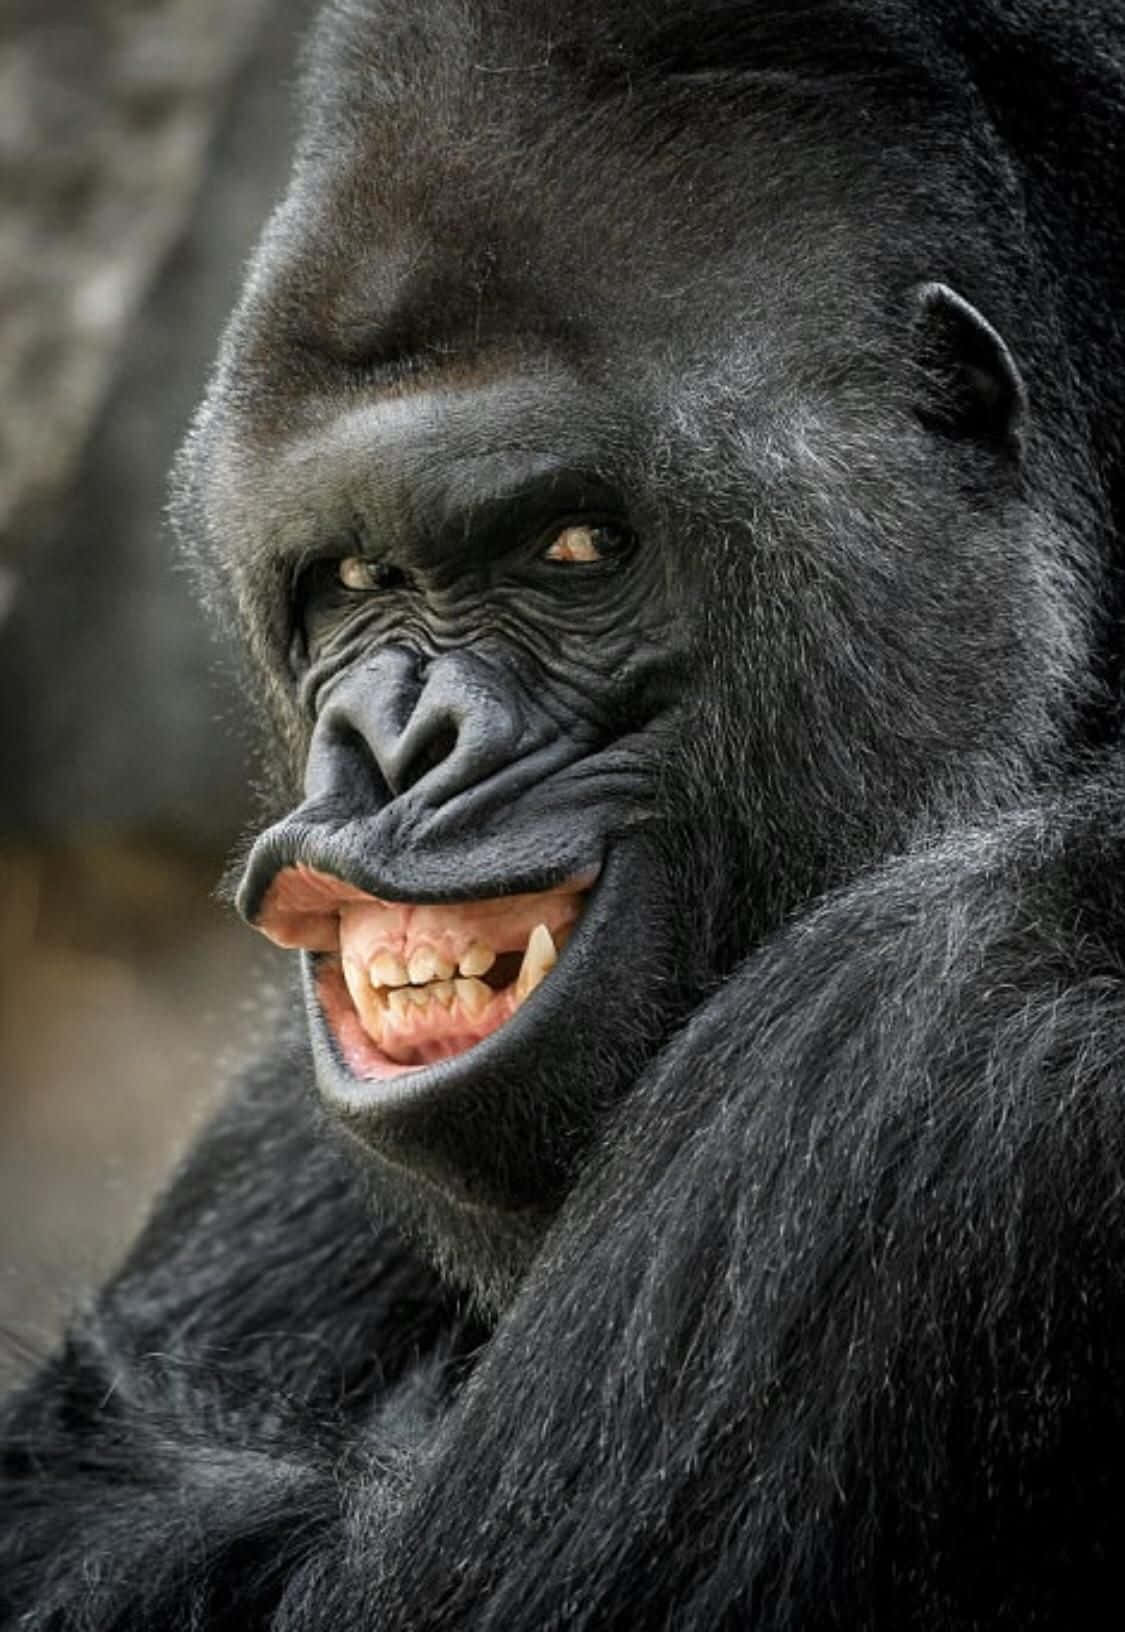 Riesigelustige Gorilla, Die Grinsende Bilder